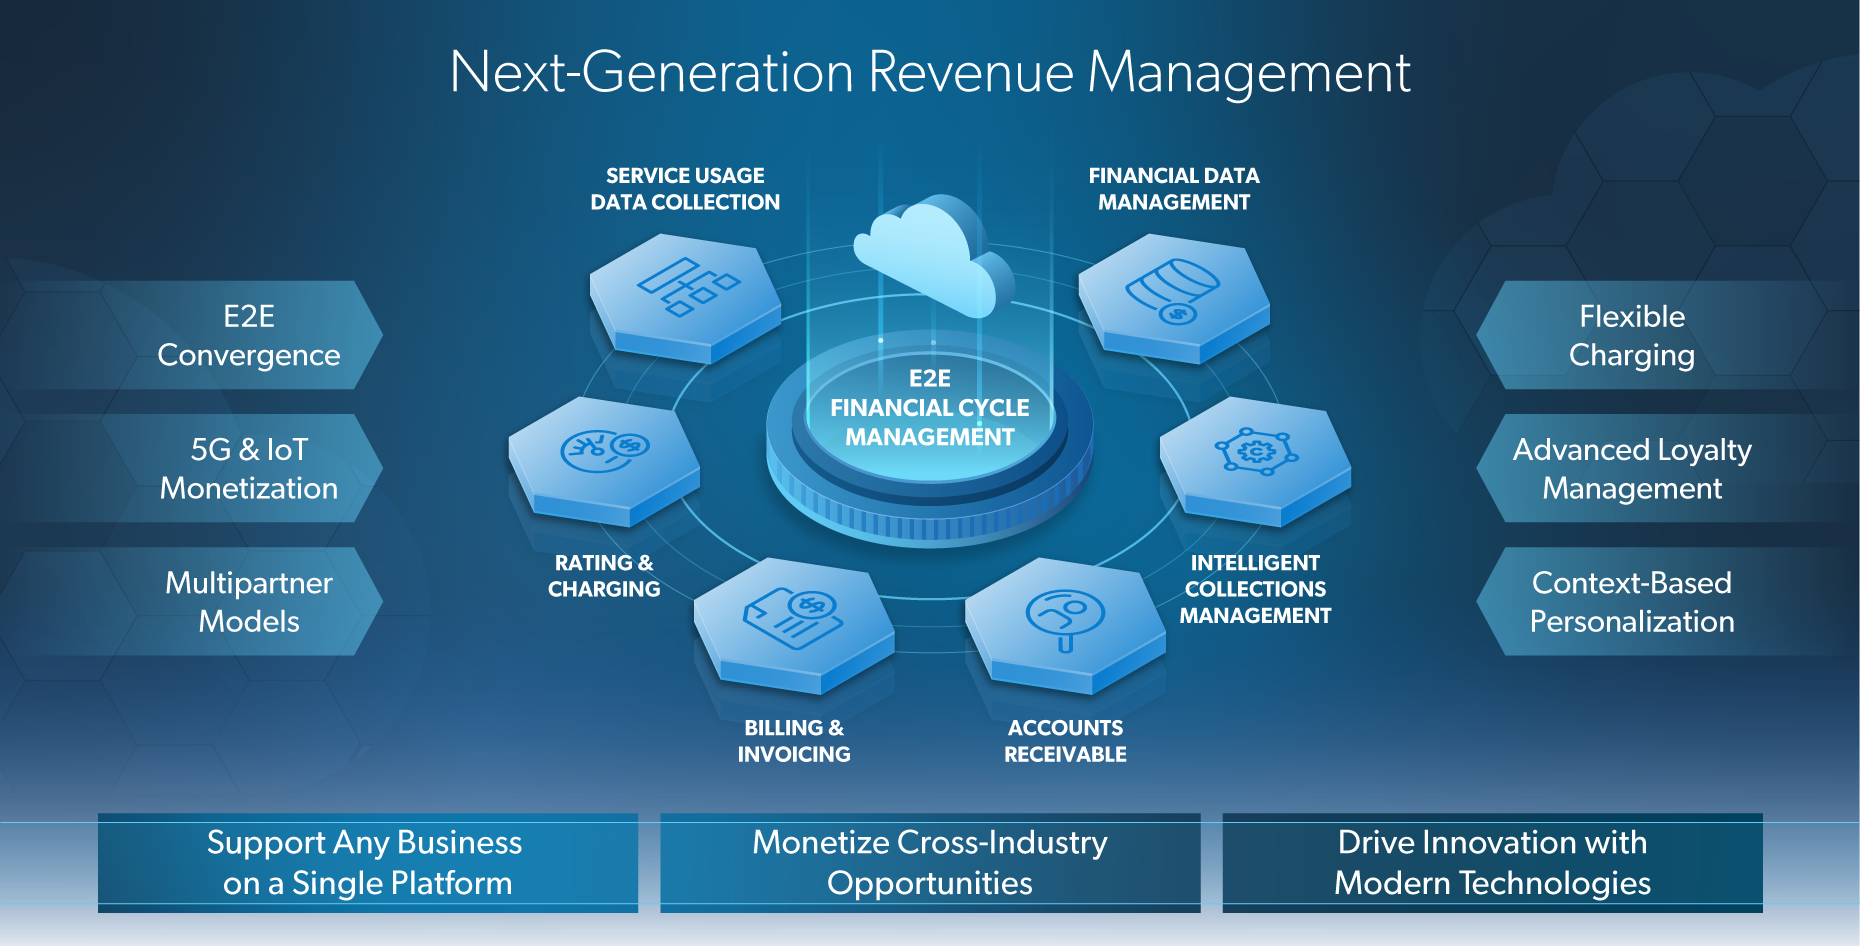 Next-Generation Revenue Management